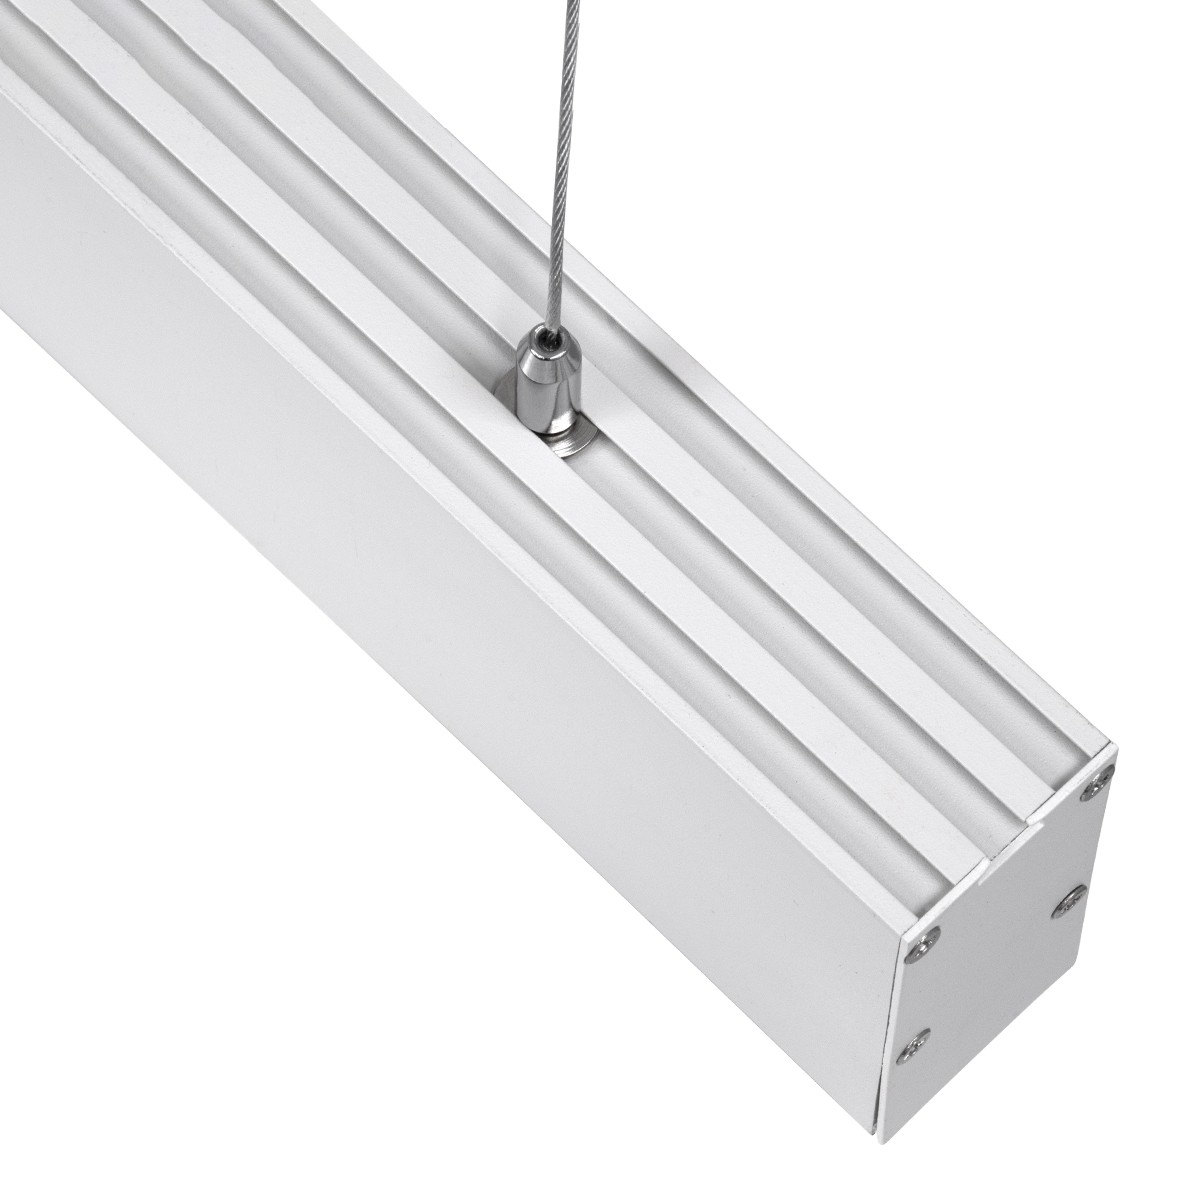 Led Γραμμικό Κρεμαστό Φωτιστικό Οροφής FELIX 54Watt Λευκό με Εναλλαγή Φωτισμού Μ120 x Π3.5 x Υ7cm